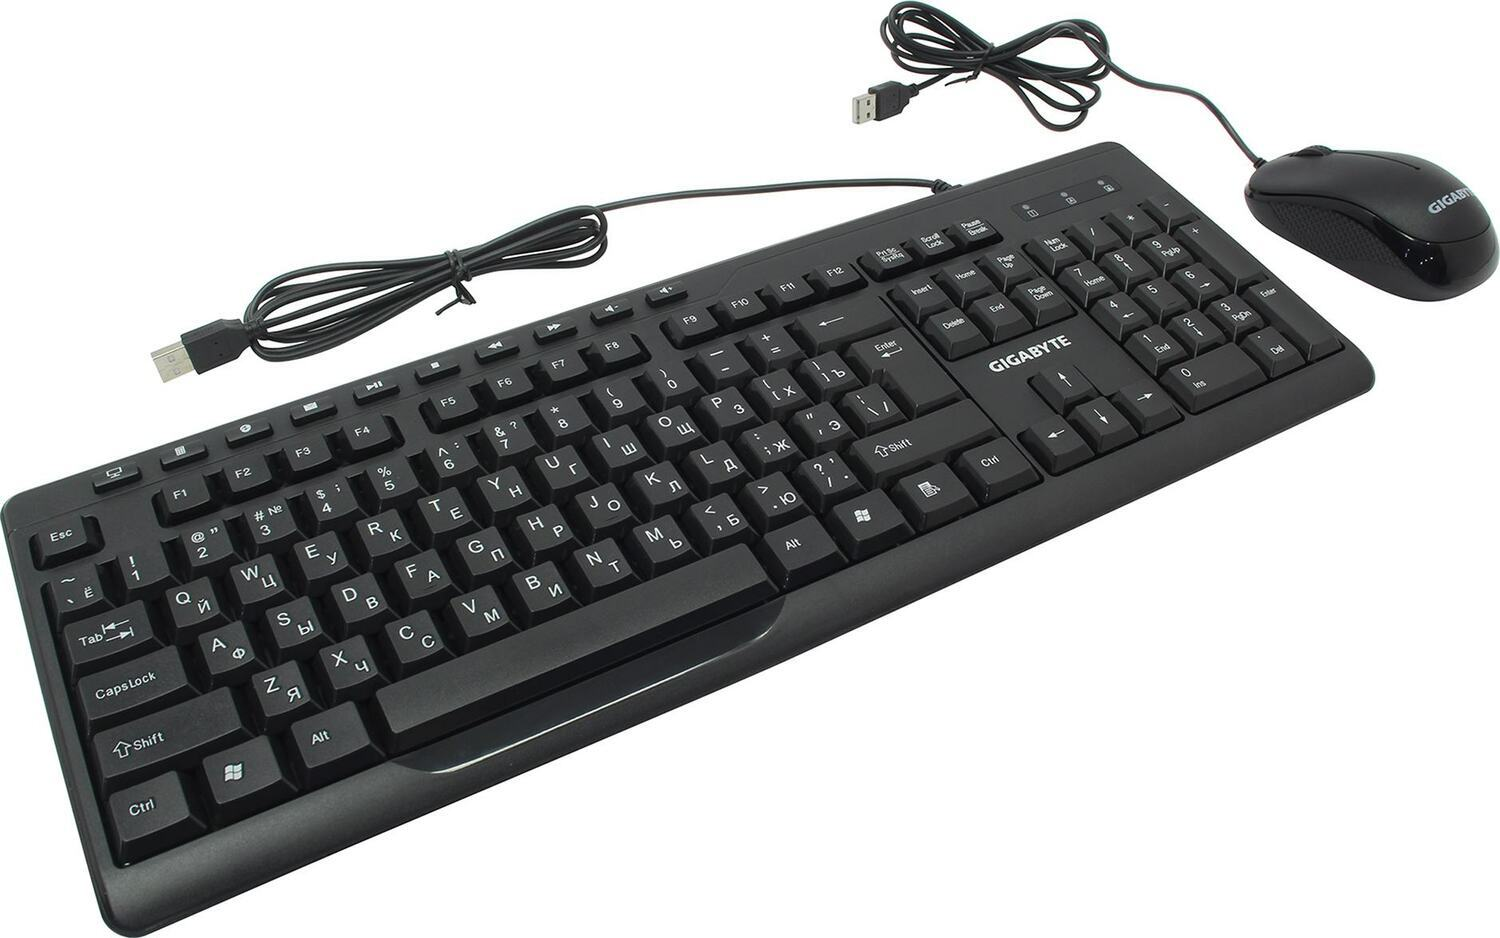 Комплект клавиатура и мышь Gigabyte GK-KM6300 RU  комплект клавиатура + мышь, проводные (USB, 1.5м), 1000dpi, {20} (551179) комплект клавиатура + мышь, проводные (USB, 1.5м), 1000dpi, (20) (551179) Gigabyte